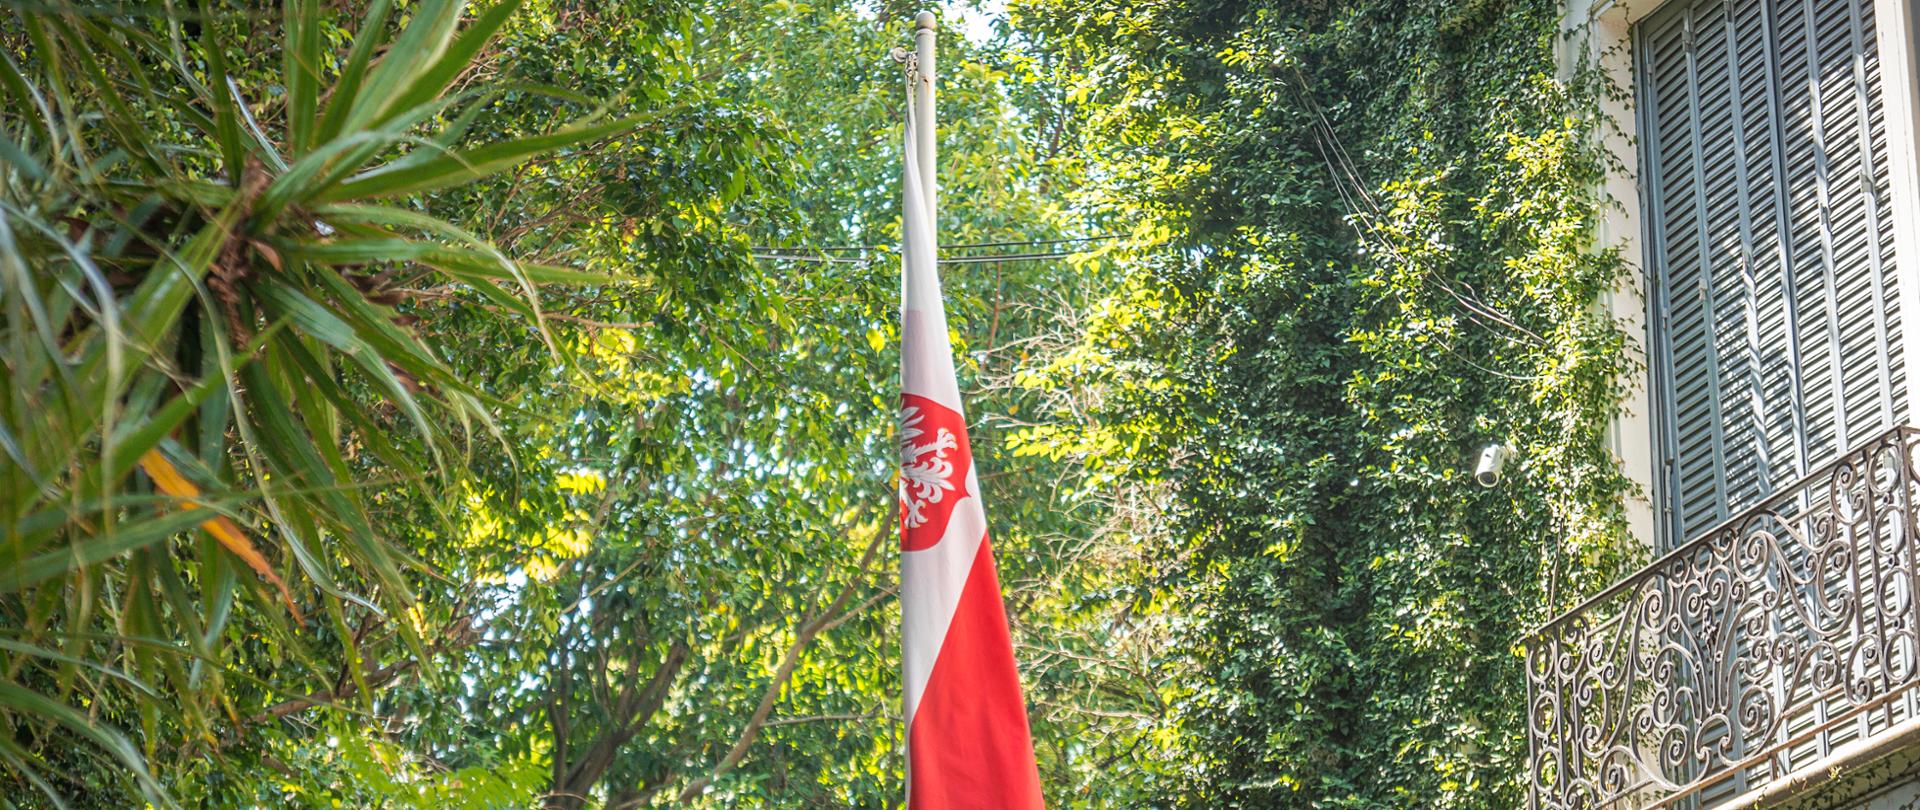 Flaga Polski w ogrodzie